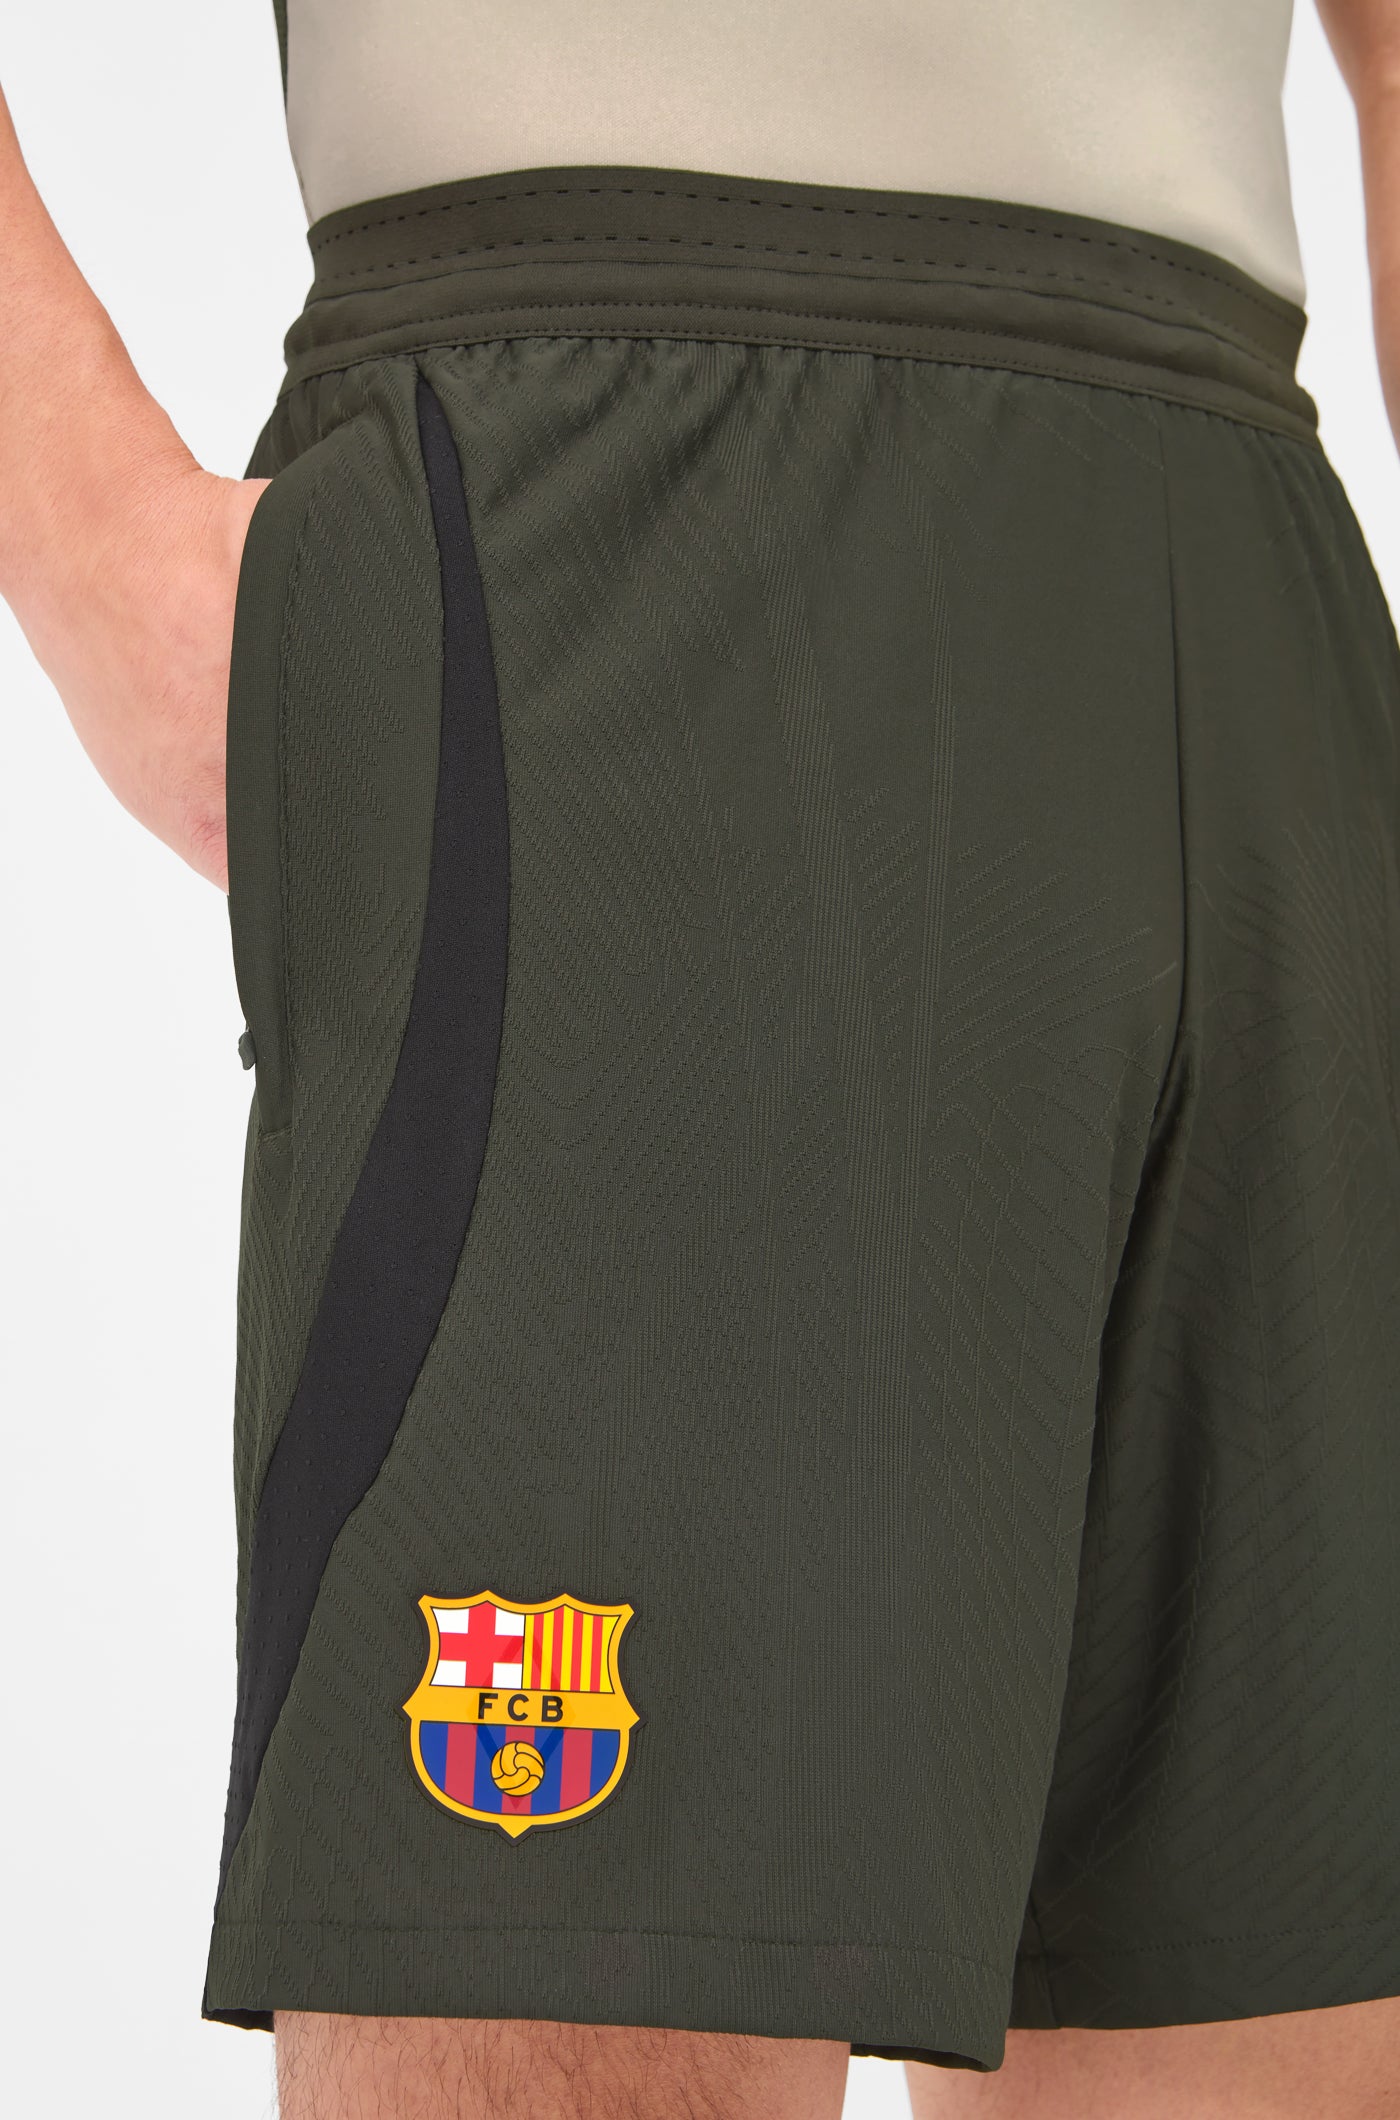 Pantalons curts entrenament FC Barcelona 23/24 Edició Jugador